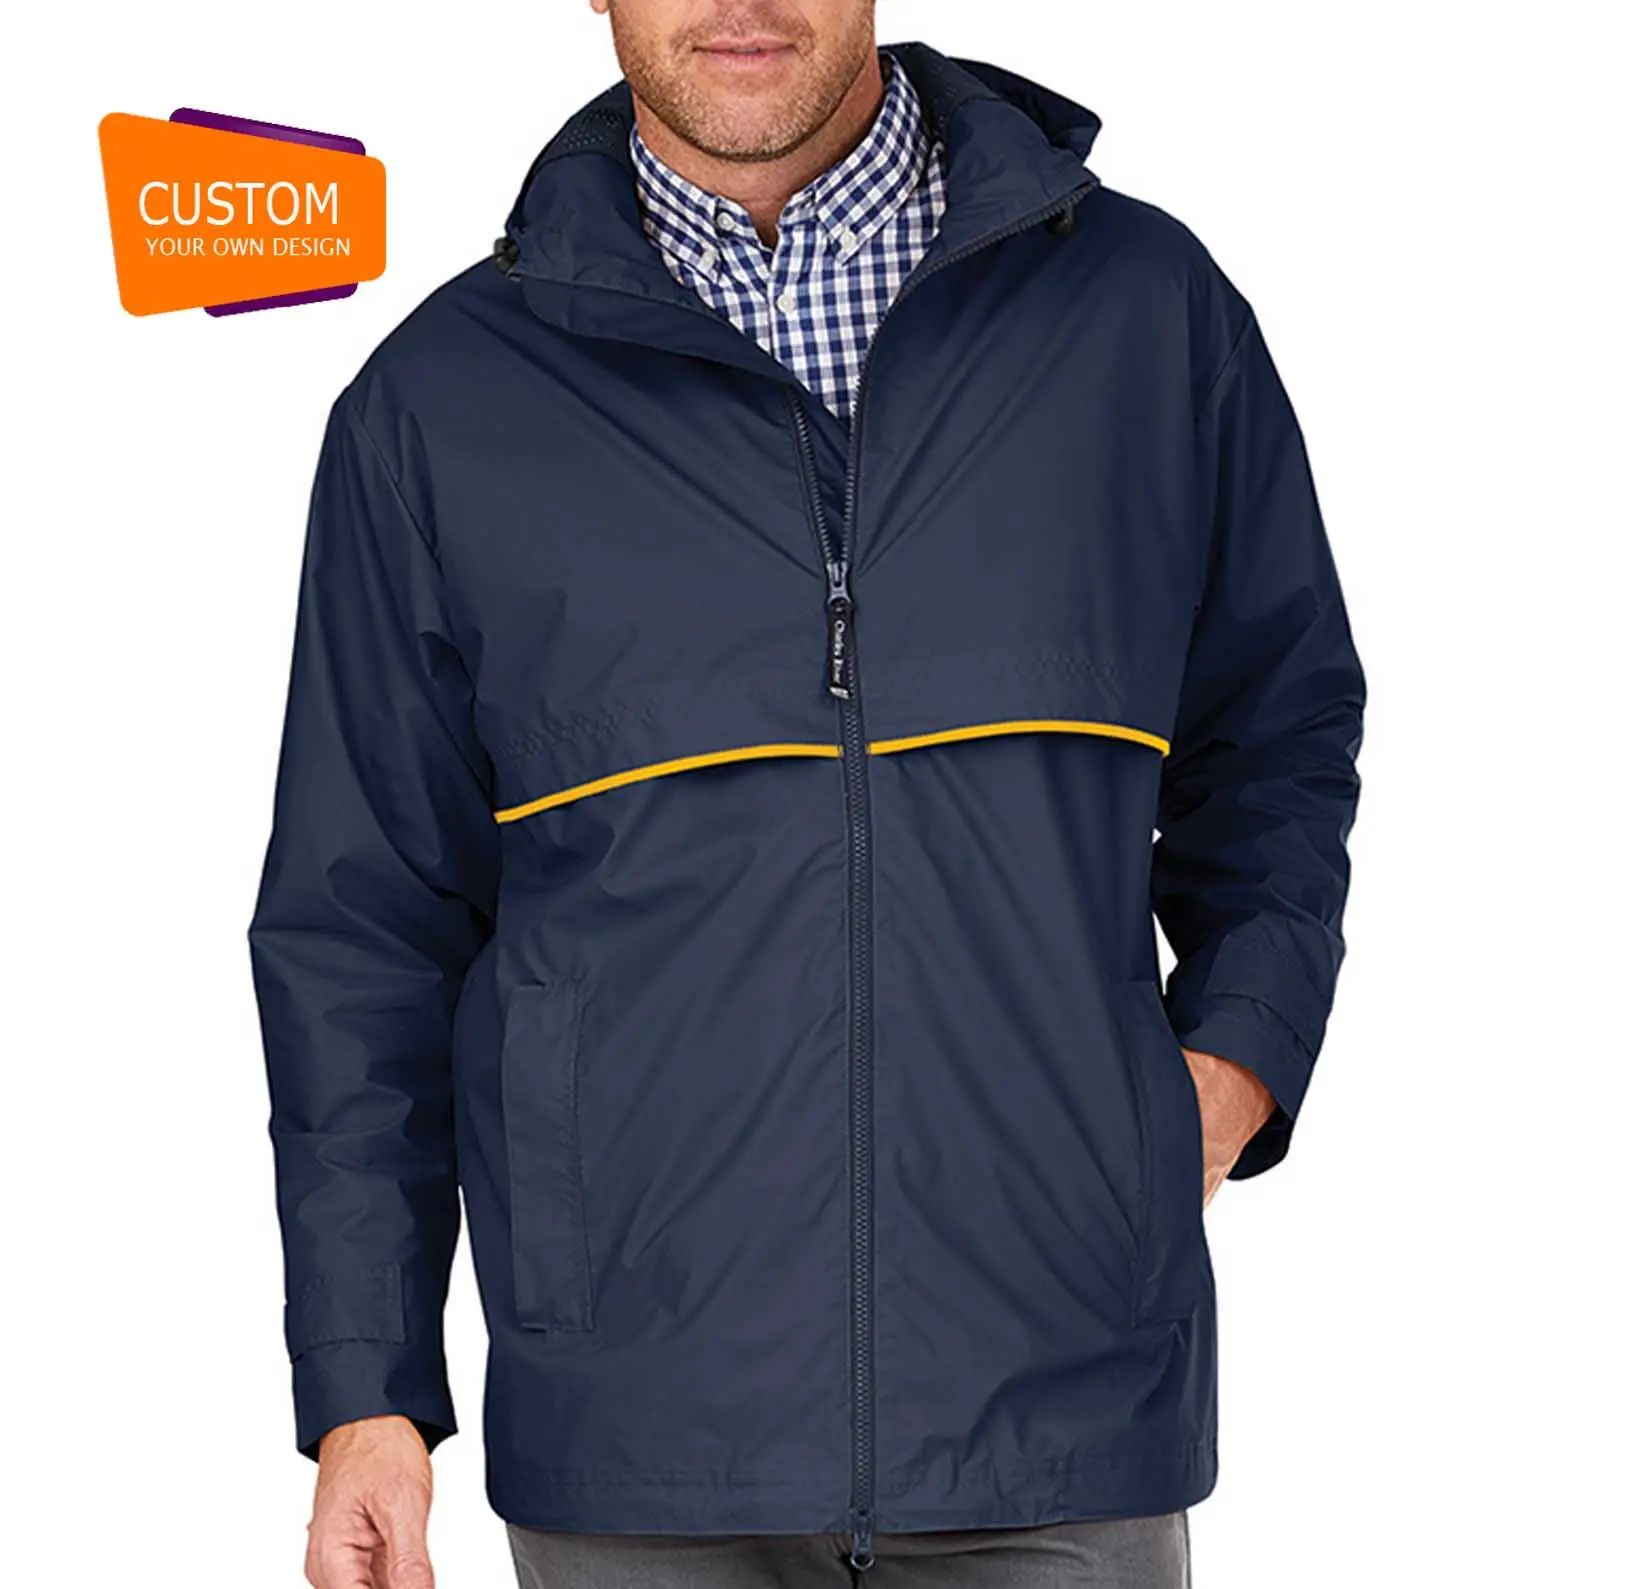 Veste de pluie pour hommes, vestes de course à pied et de cyclisme, imperméable, design personnalisé, coupe-vent, veste de randonnée, manteau de pluie